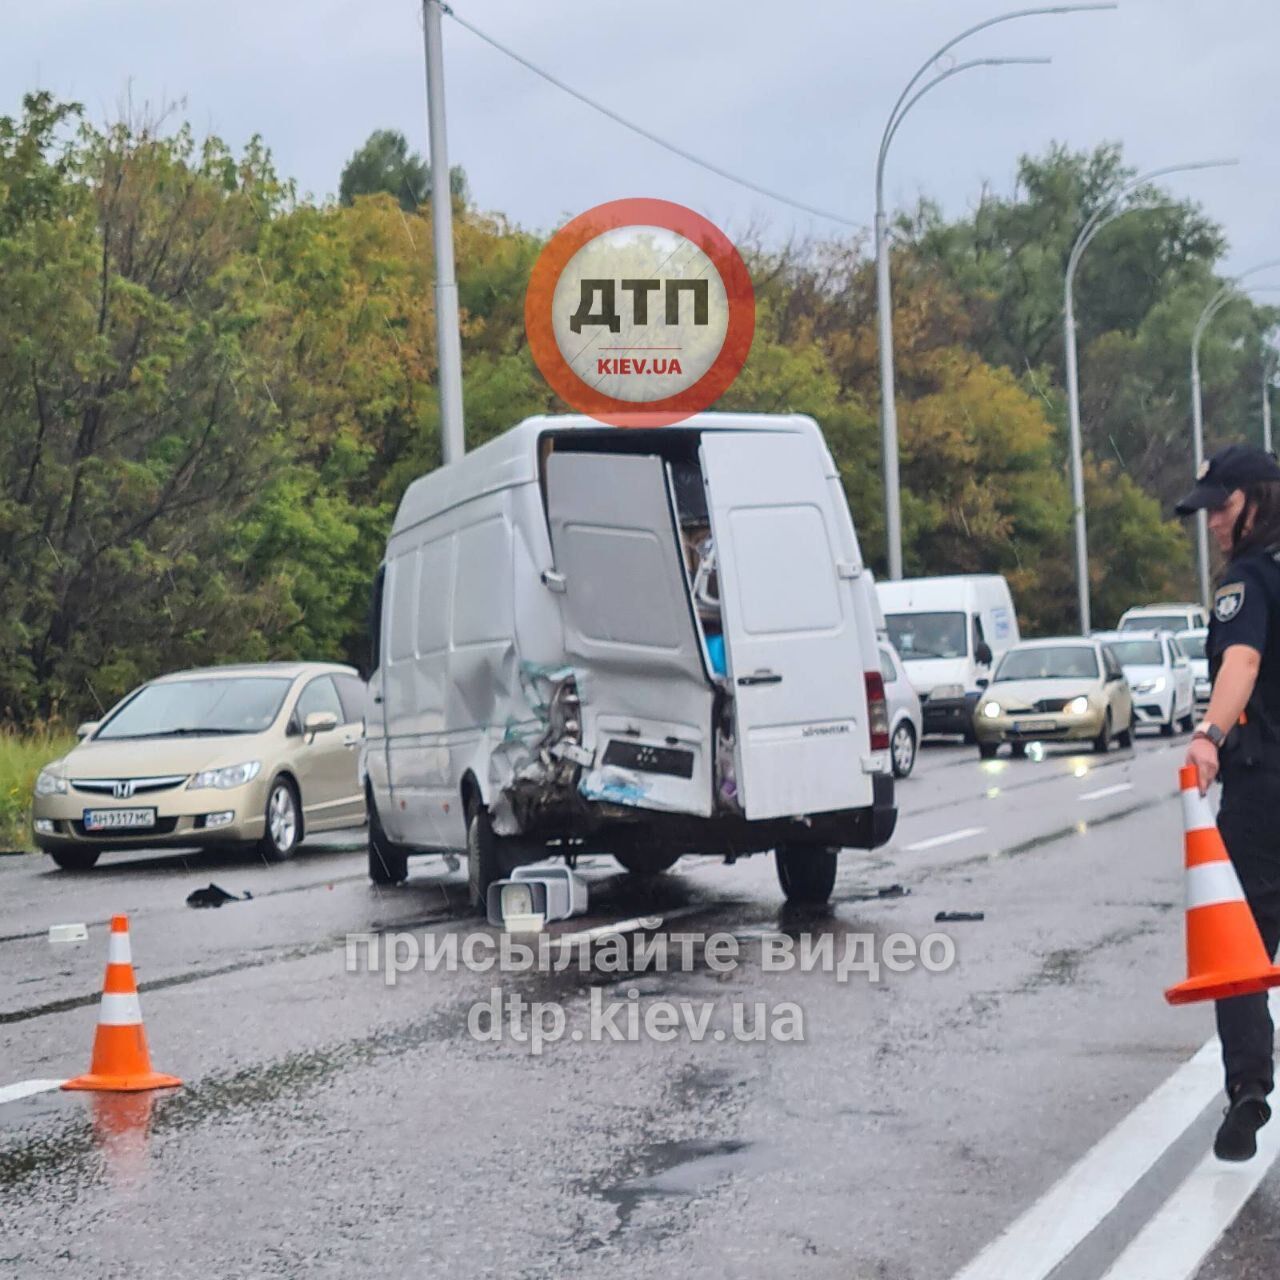 Автопроисшествие случилось на улице Академика Заболотного.